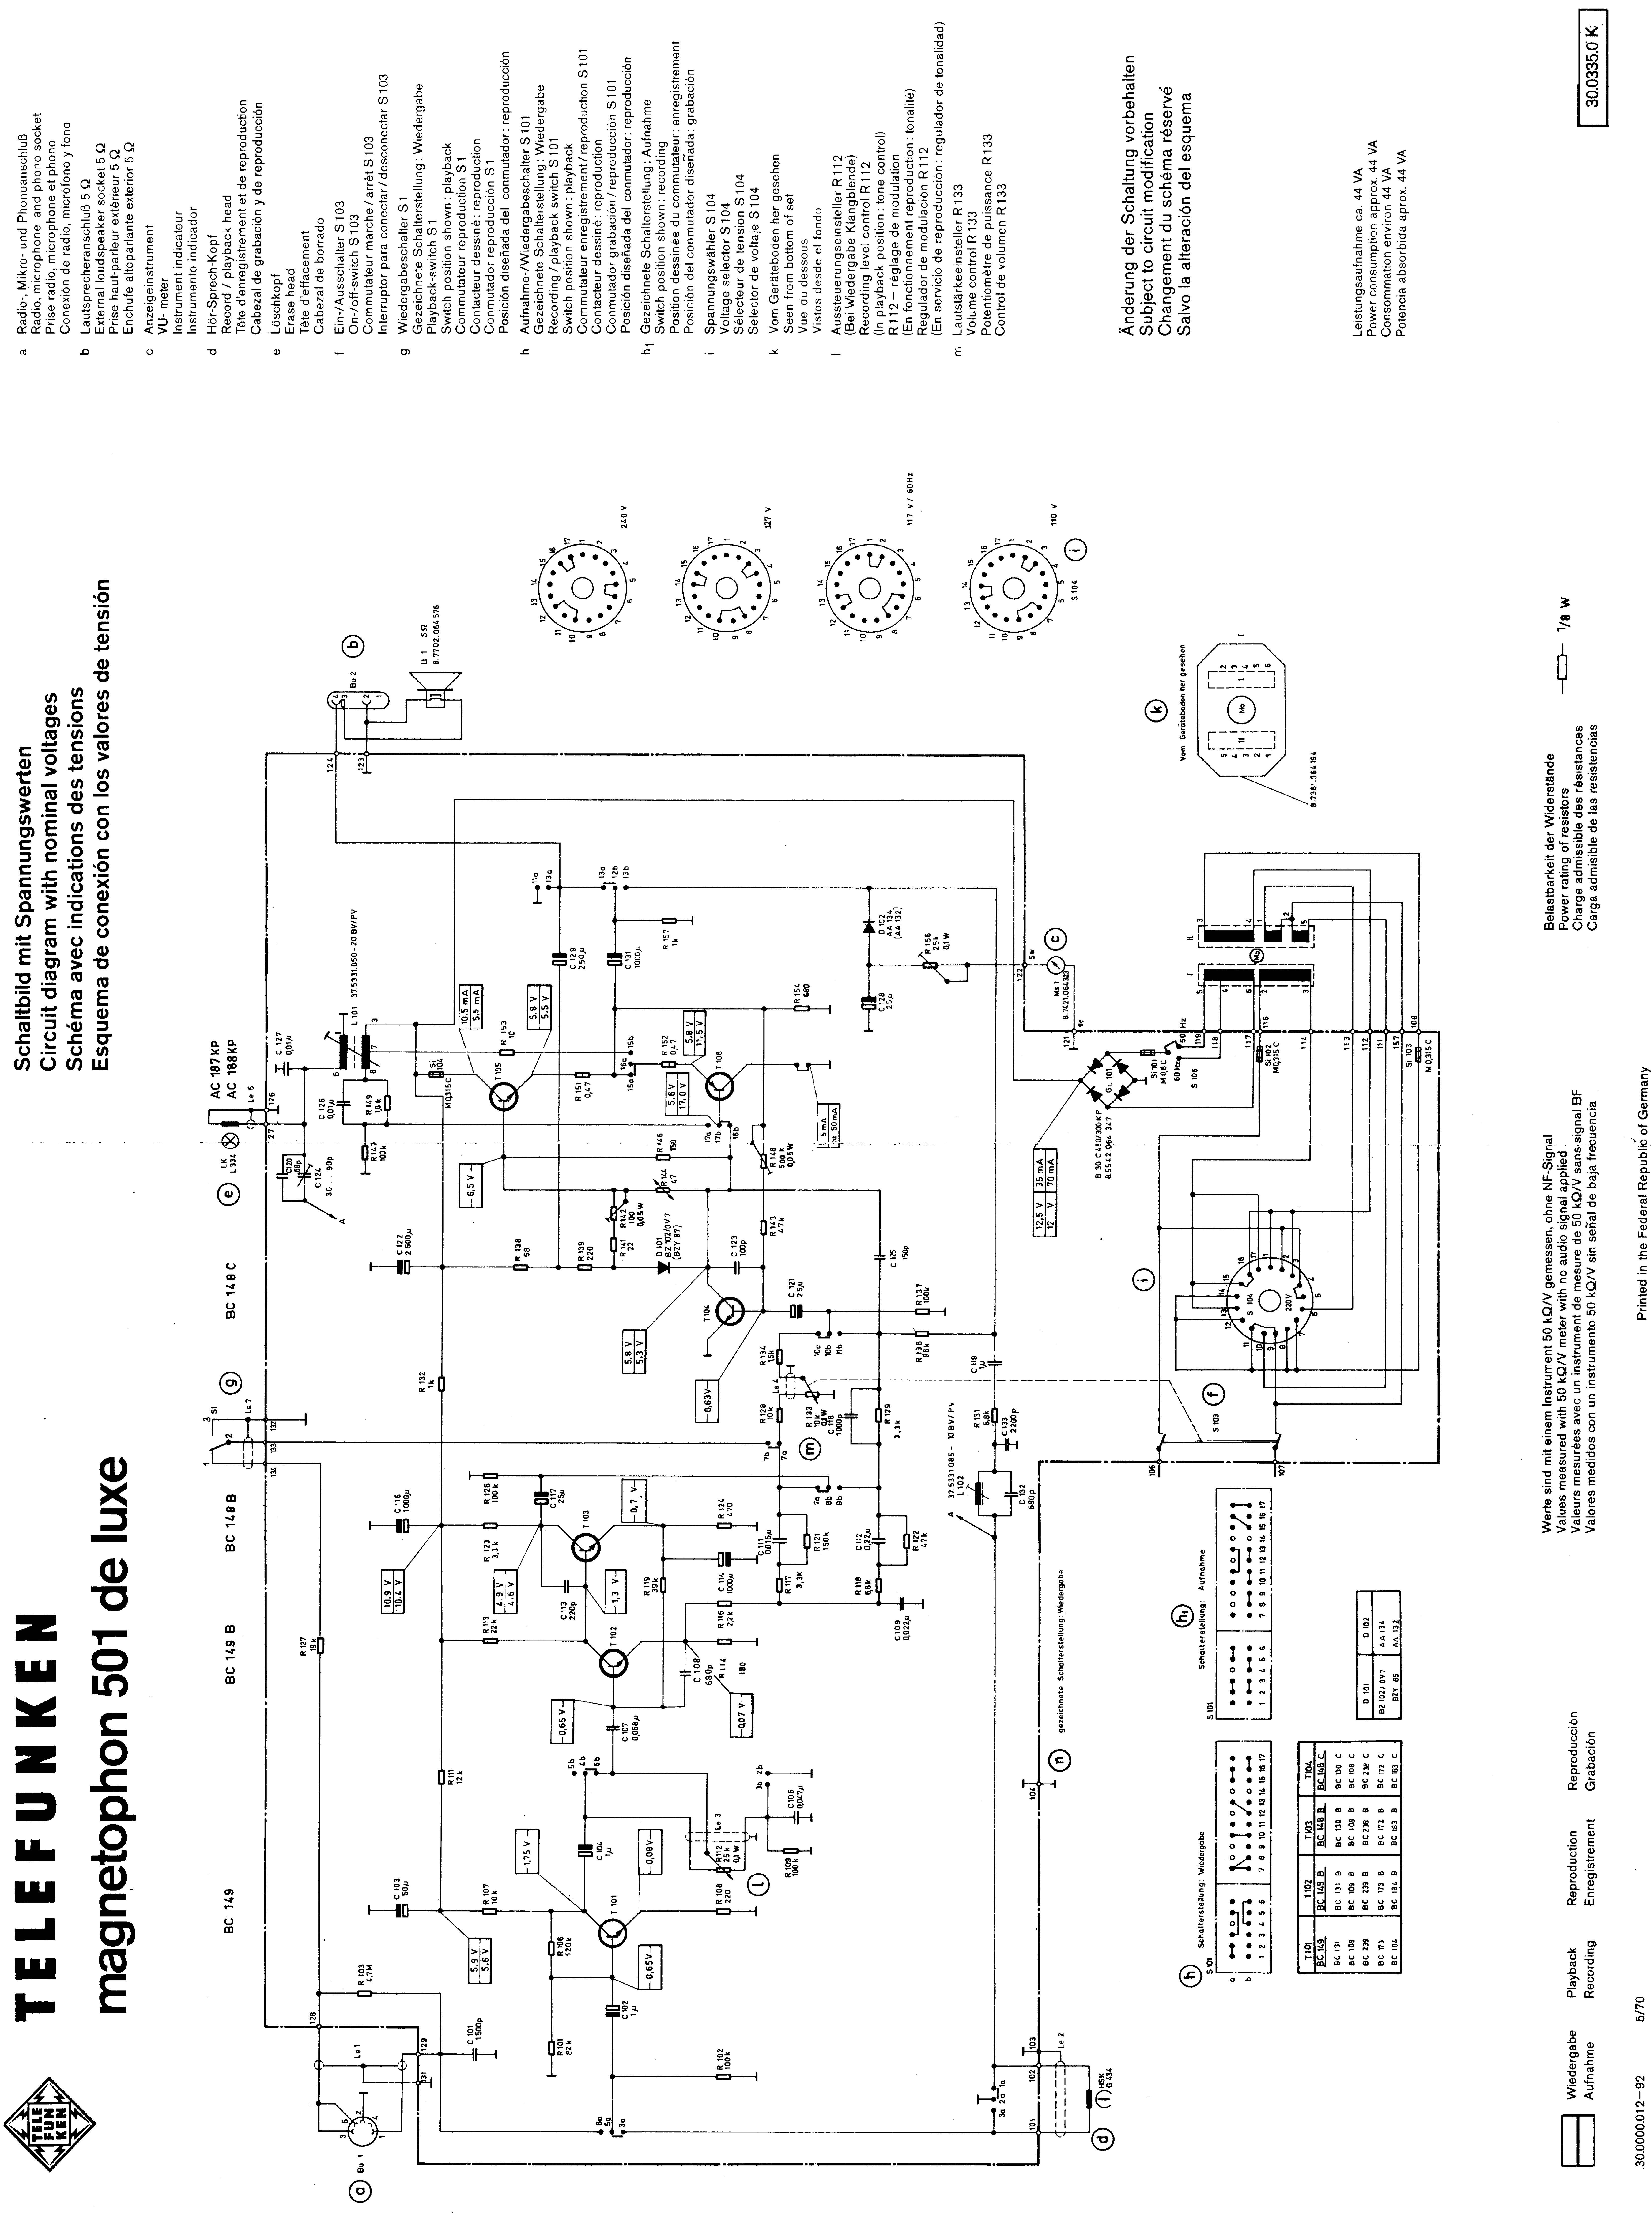 Telefunken Magnetophon 501 (de luxe)